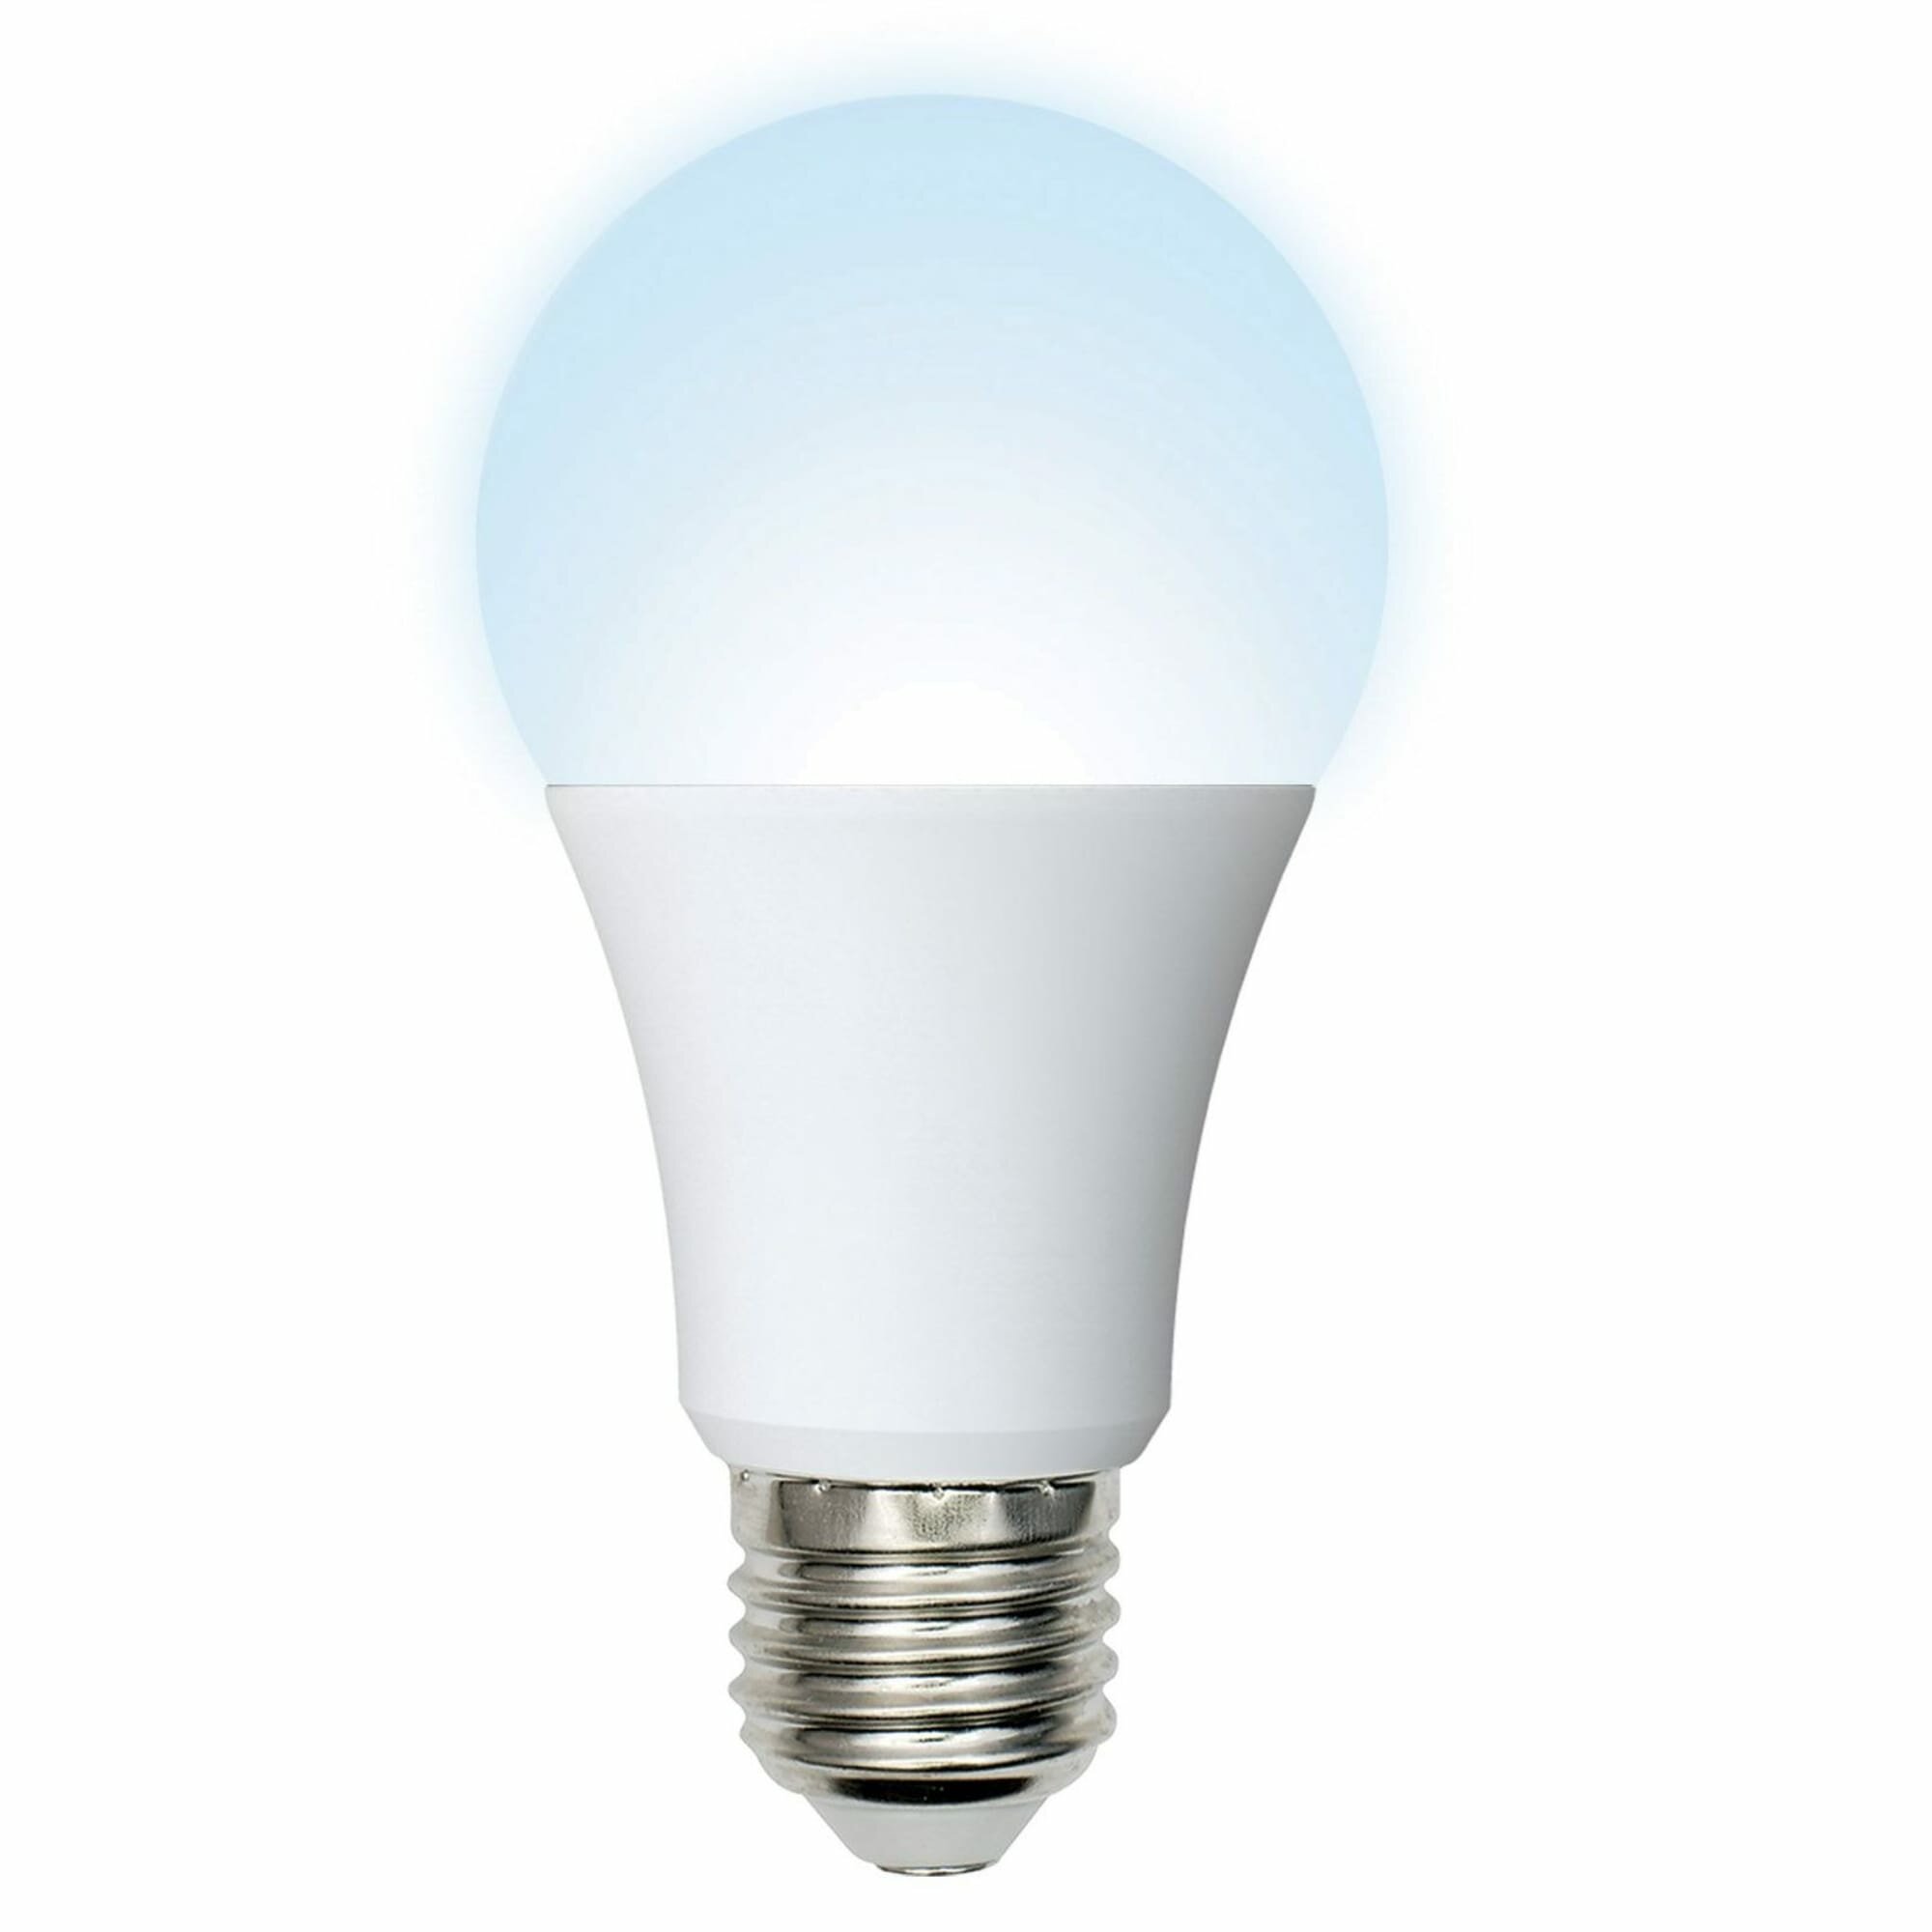 Лампа светодиодная Volpe E27 220-240 В 12 Вт груша матовая 1000 лм нейтральный белый свет